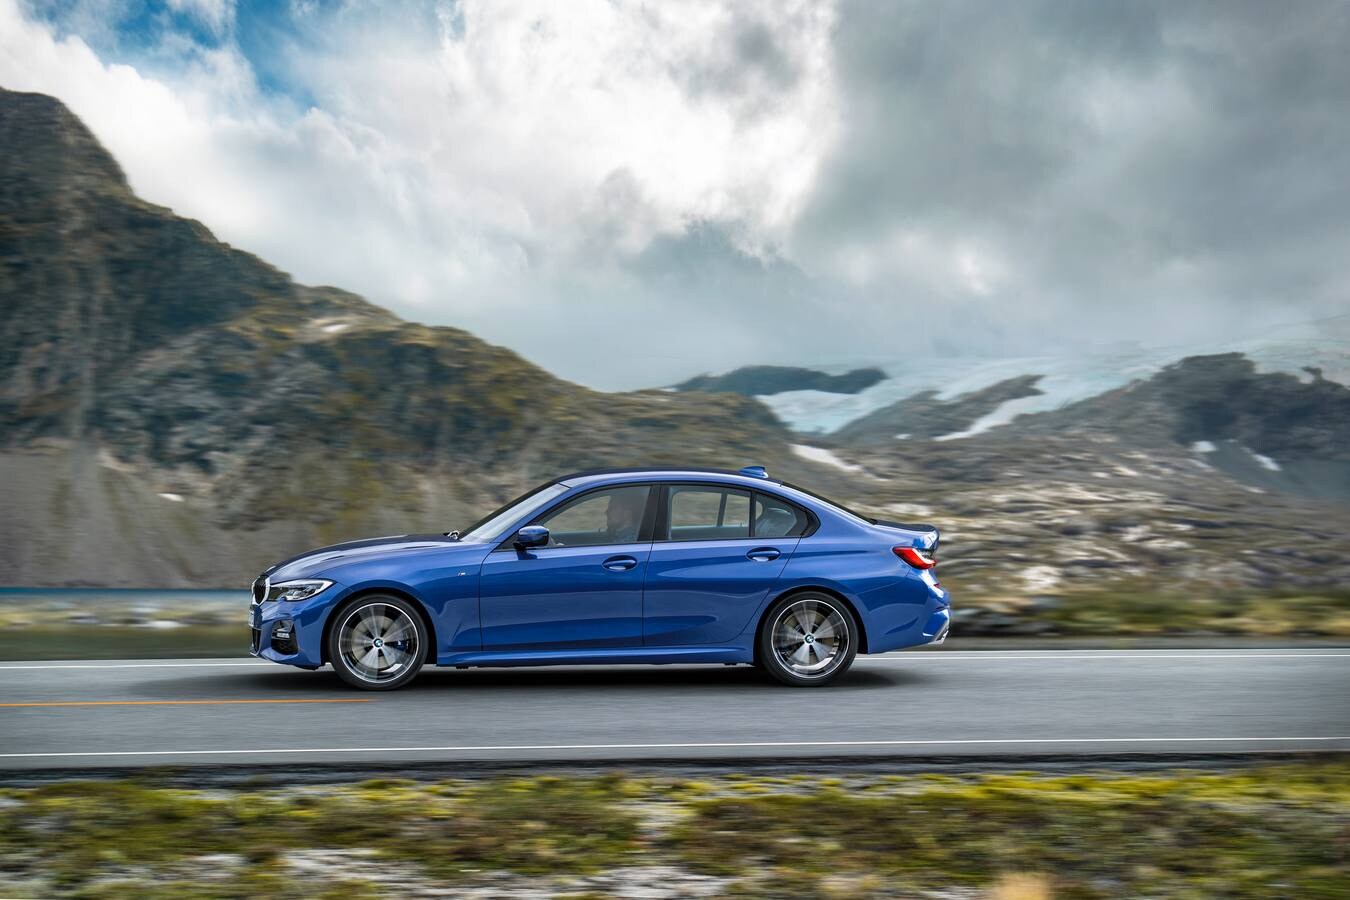 La nueva generación, y van siete, del BMW Serie ya está a la venta. Un modelo que crece en dimensiones y vuelve a poner el listón a gran altura en términos de dinámica de conducción, calidad e innovación.